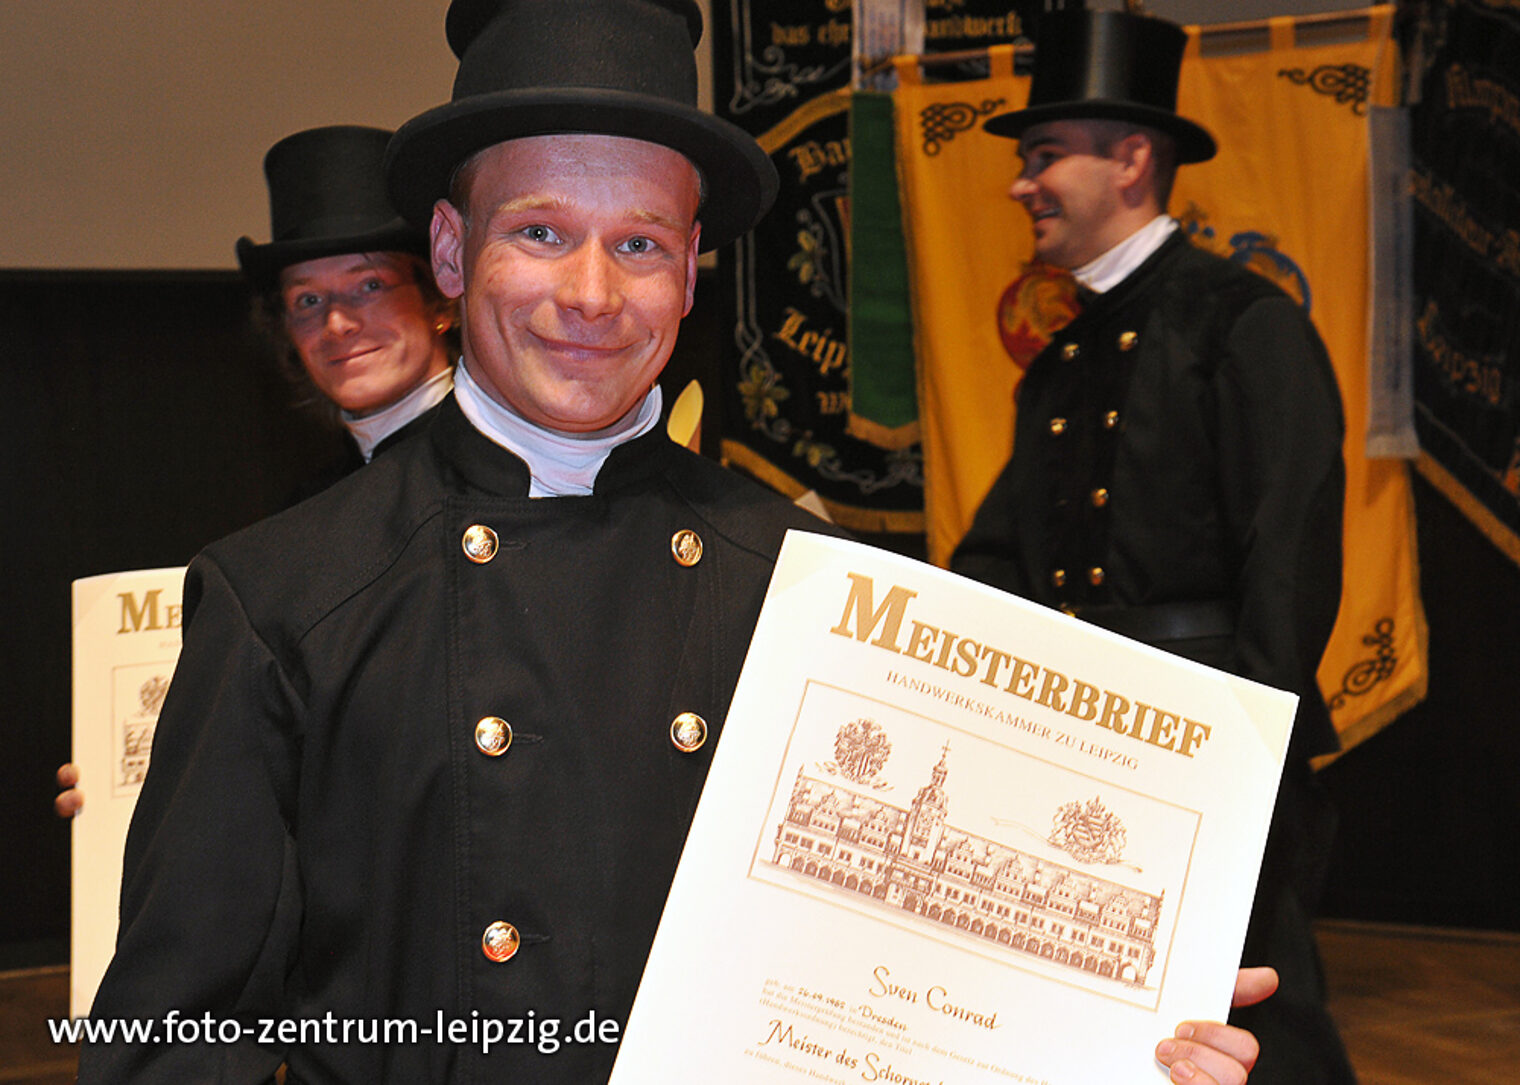 Meisterfeier der Handwerkskammer zu Leipzig 2012. Bild: www.foto-zentrum-leipzig.de 7